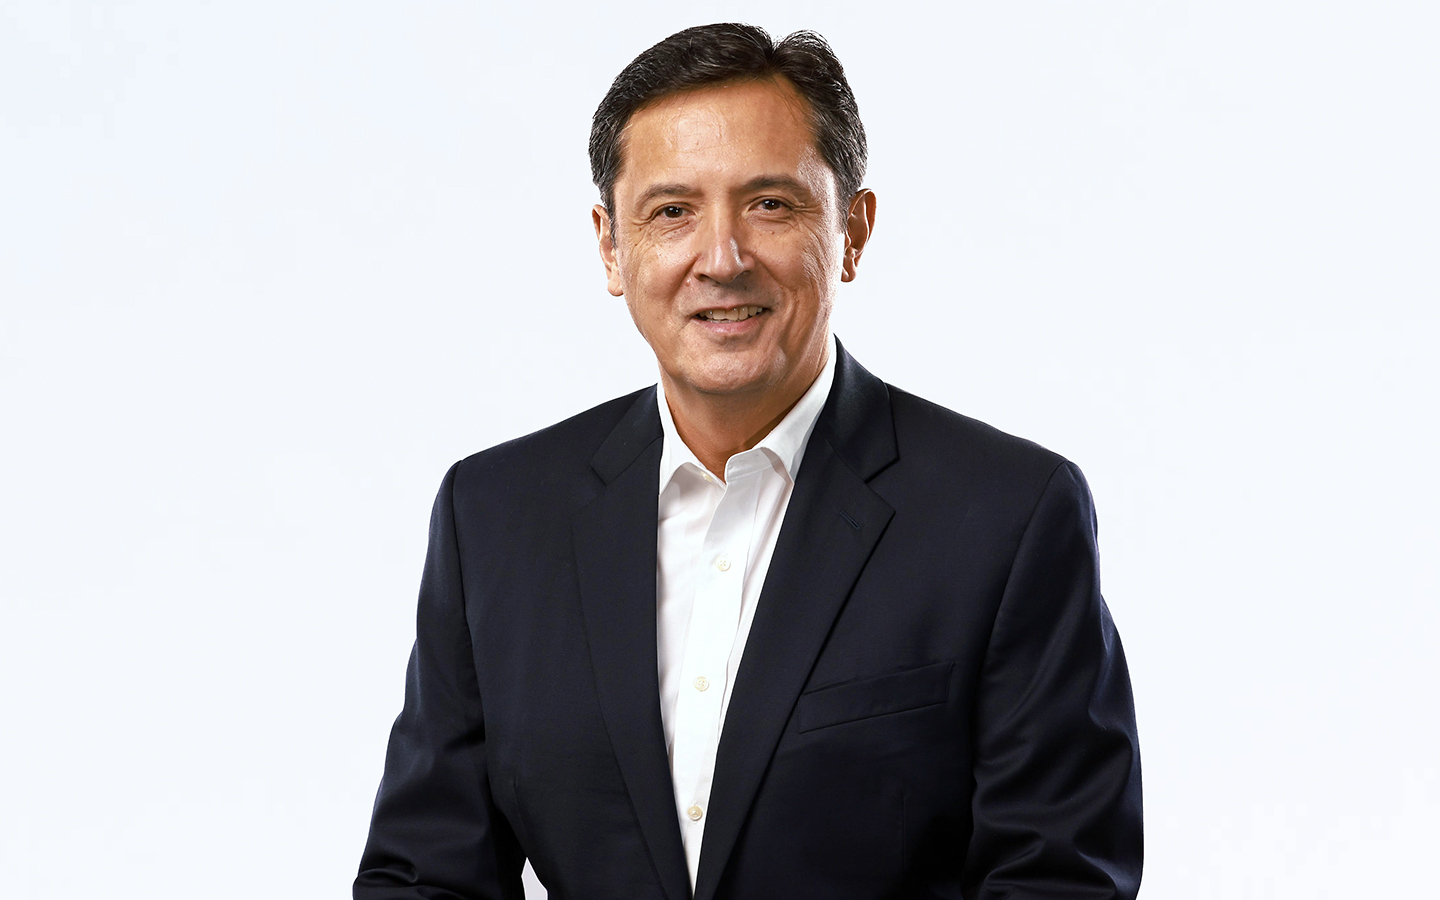 Non-executive Director Michael del Prado